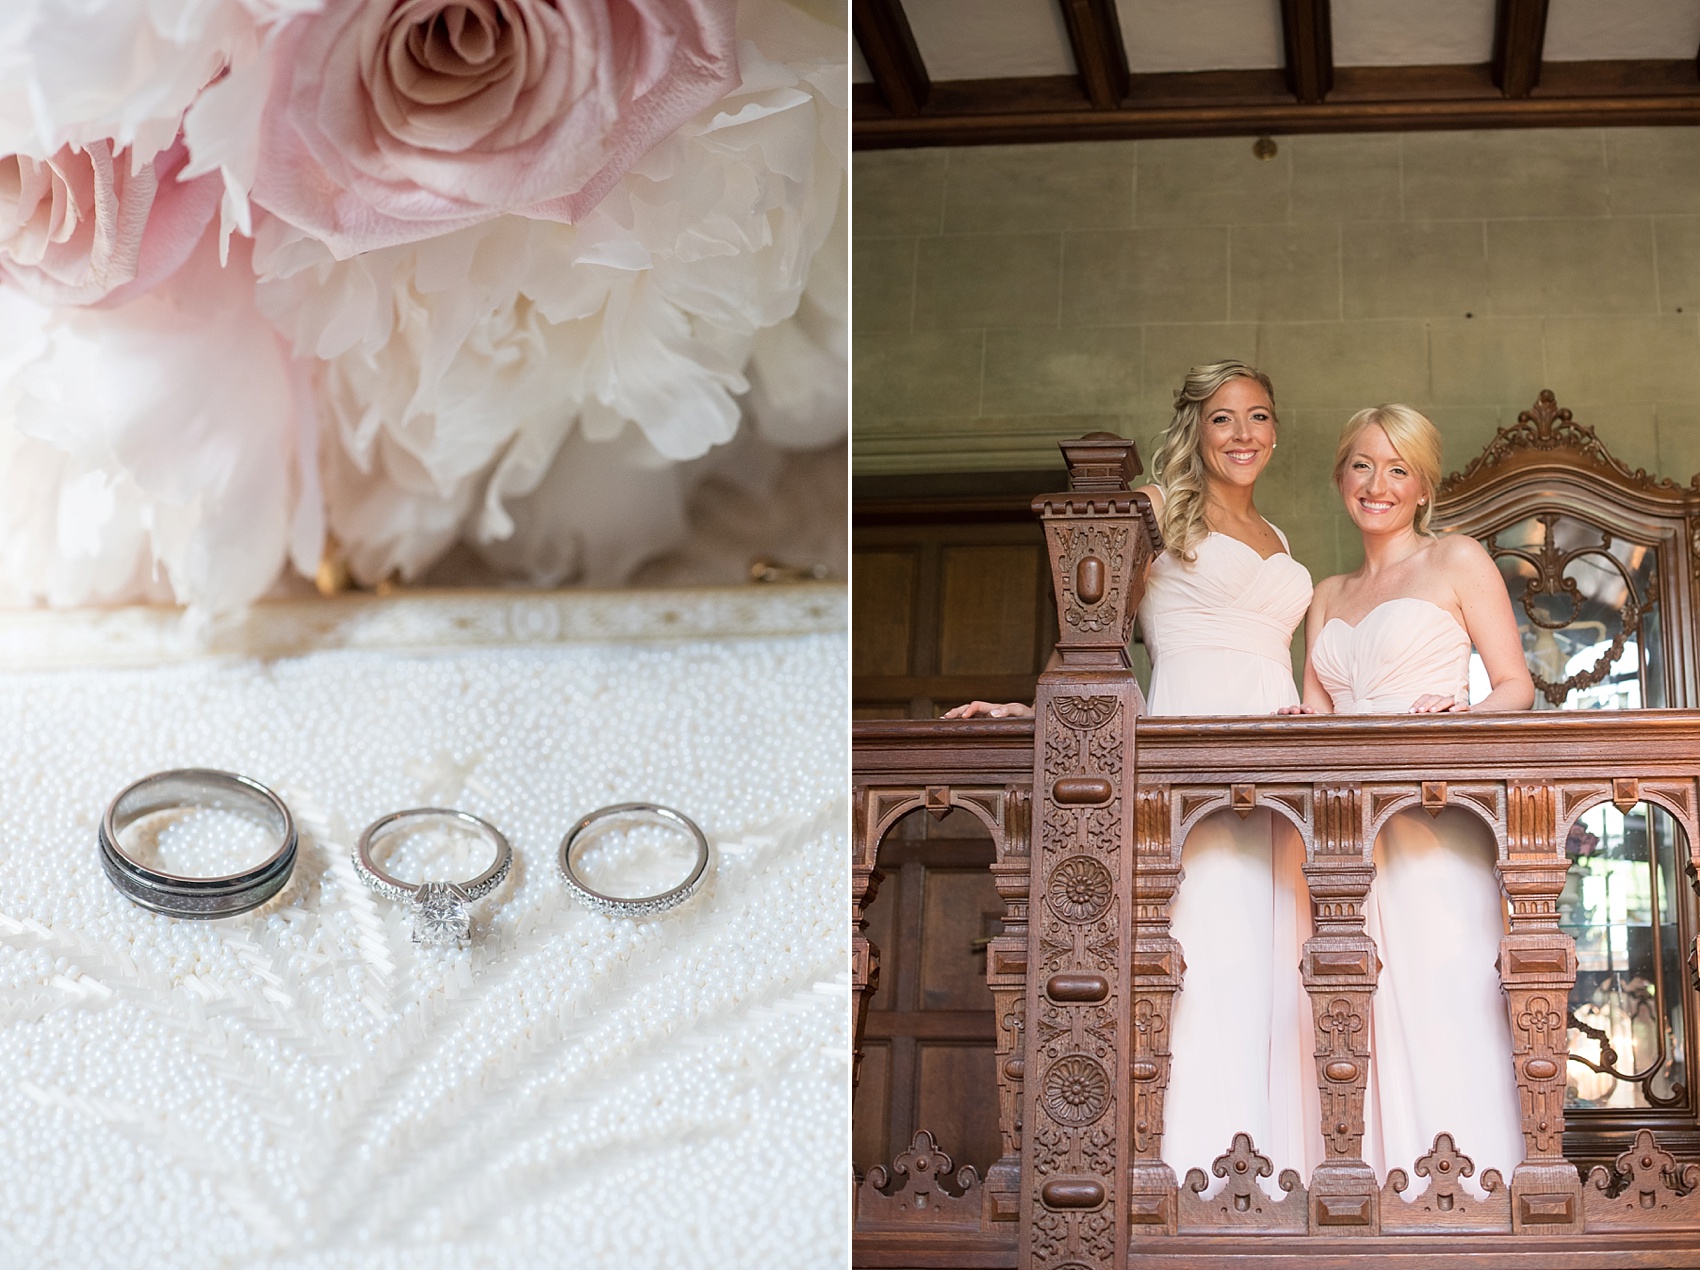 Skylands Manor wedding with wedding ring photo. Images by Mikkel Paige Photography, NJ wedding photographer.